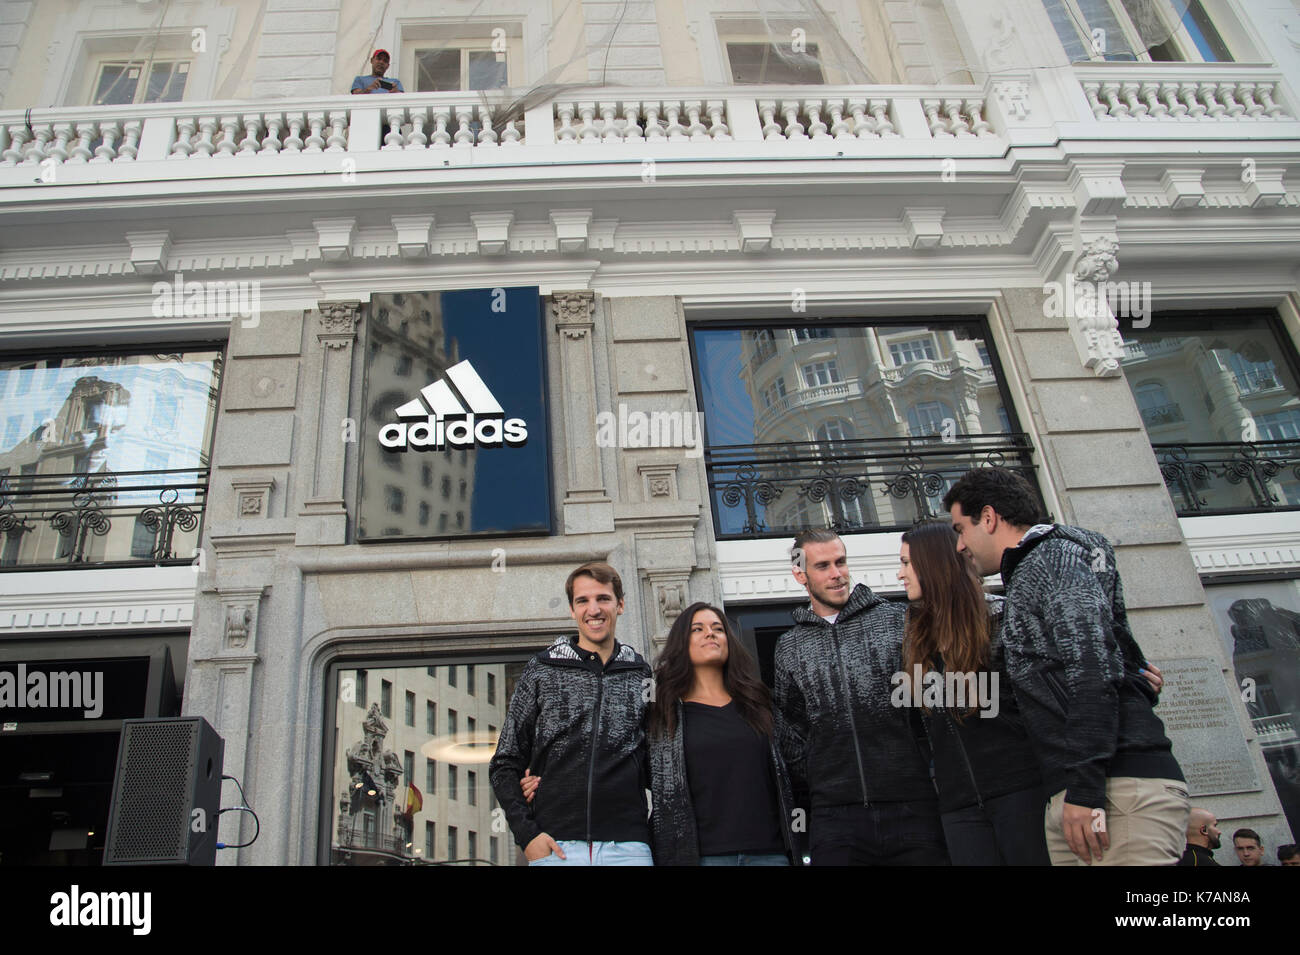 El futbolista Bale imagen de la nueva linea de ropa ZNE Pulse de la firma Adidas. Madrid 15/09/2017 Stock Photo Alamy